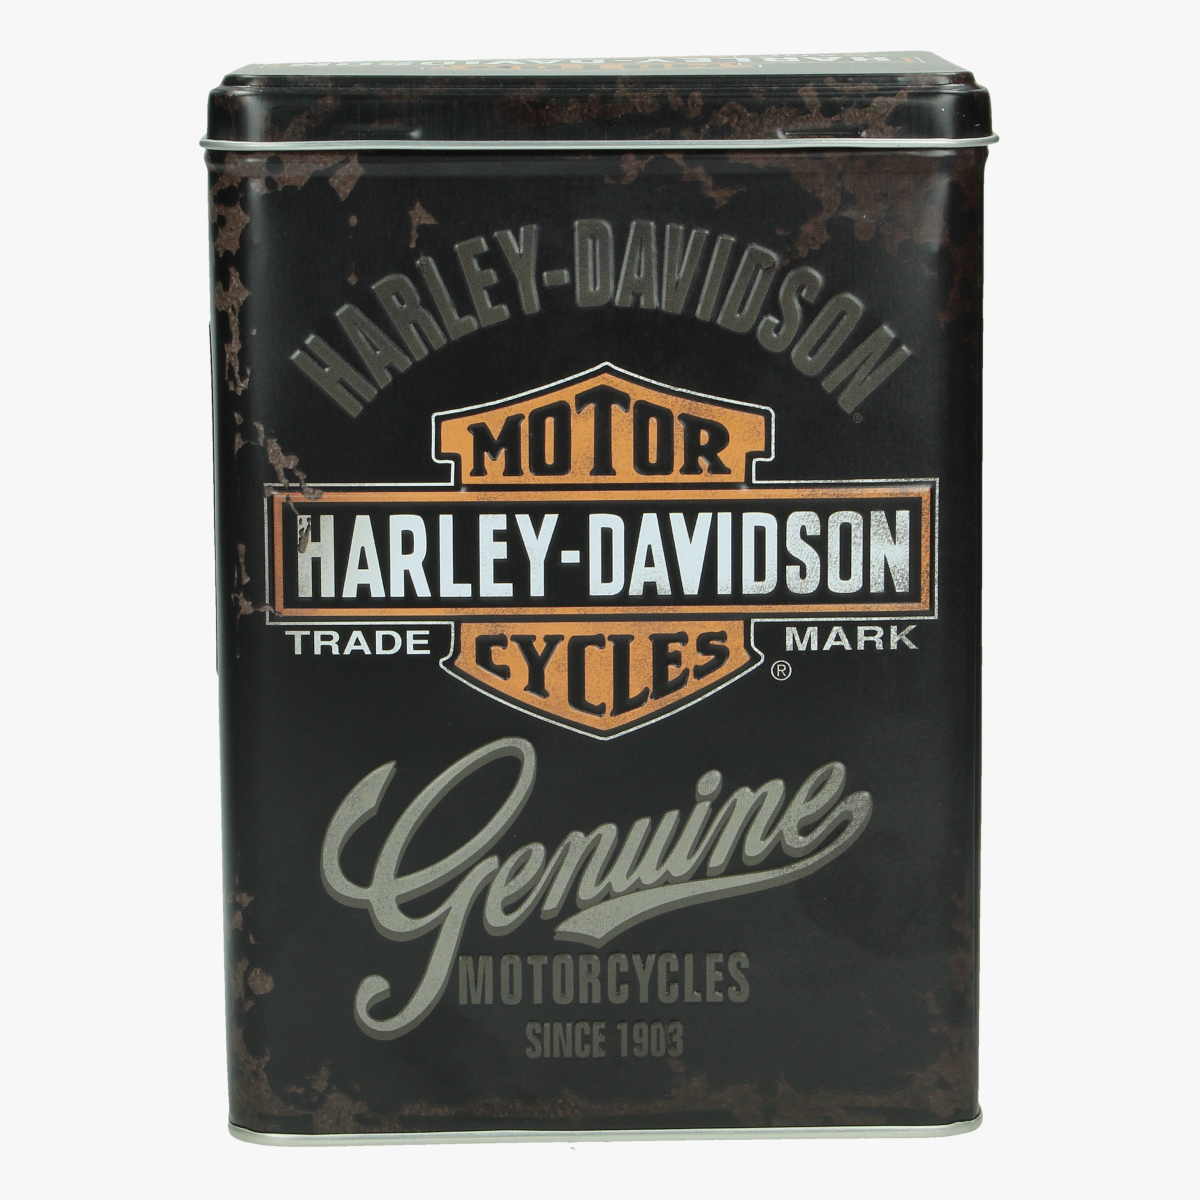 Afbeeldingen van blikken doos harley- davidson genuine motorcycles since 1903 repro